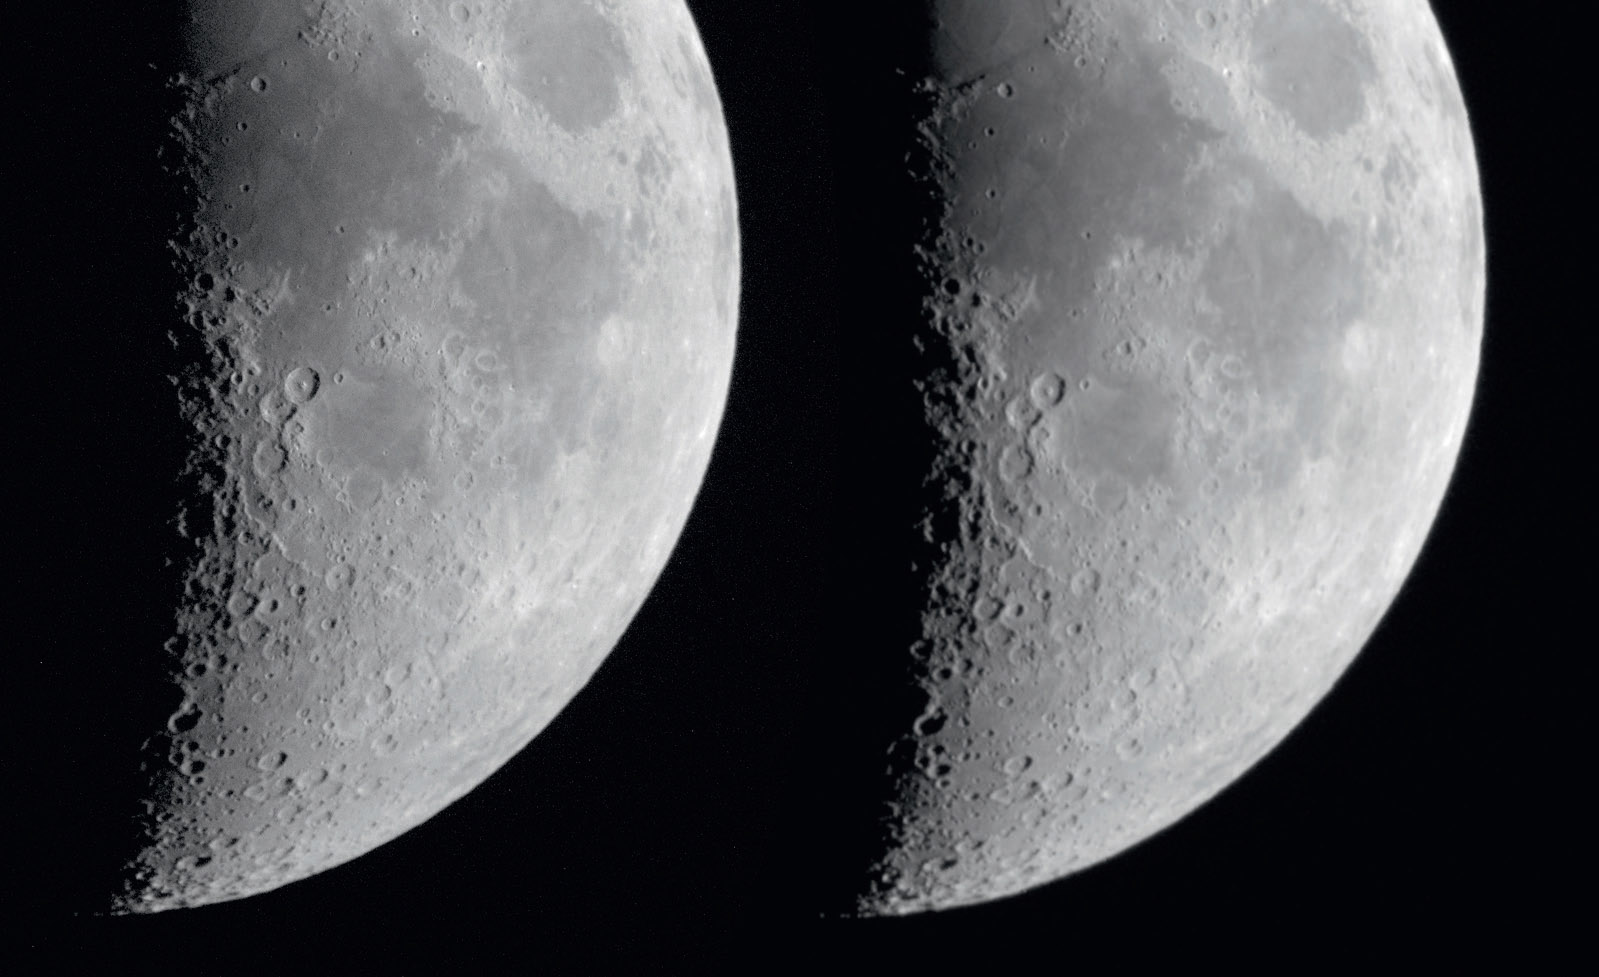 An sehr kurz belichteten Mondaufnahmen kann die Wirkung eines Reducers sehr gut
veranschaulicht werden. Links ein Mondbild bei f/12,4 und rechts mit Reducer bei f/6,7 mit gleicher Belichtungszeit
und Öffnung. Das Reducer-Bild wurde auf den gleichen Abbildungsmaßstab vergrößert. M. Weigand